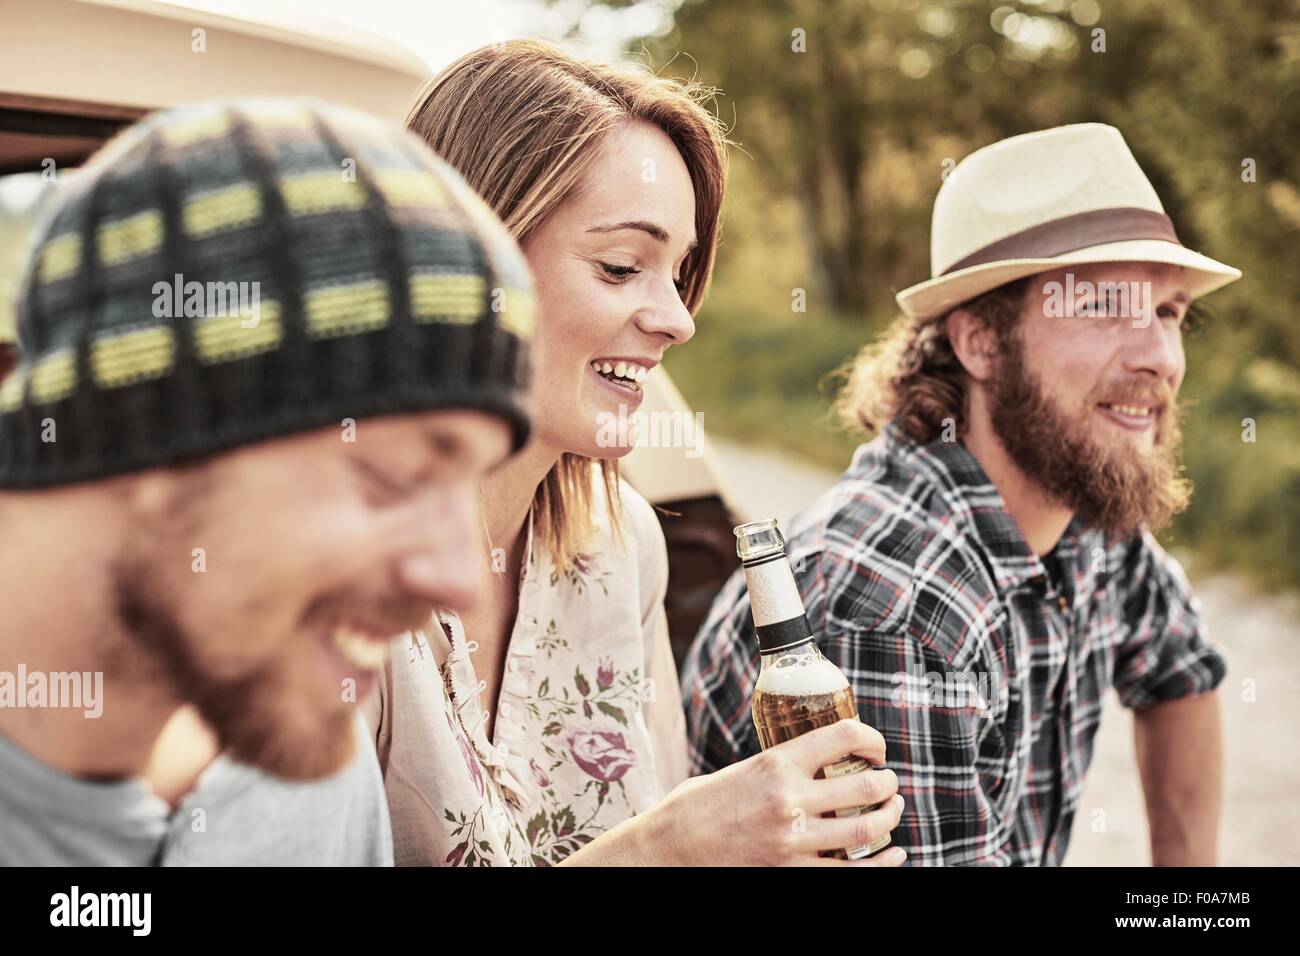 Trois personnes se tenant la bouteille de bière smiling Banque D'Images